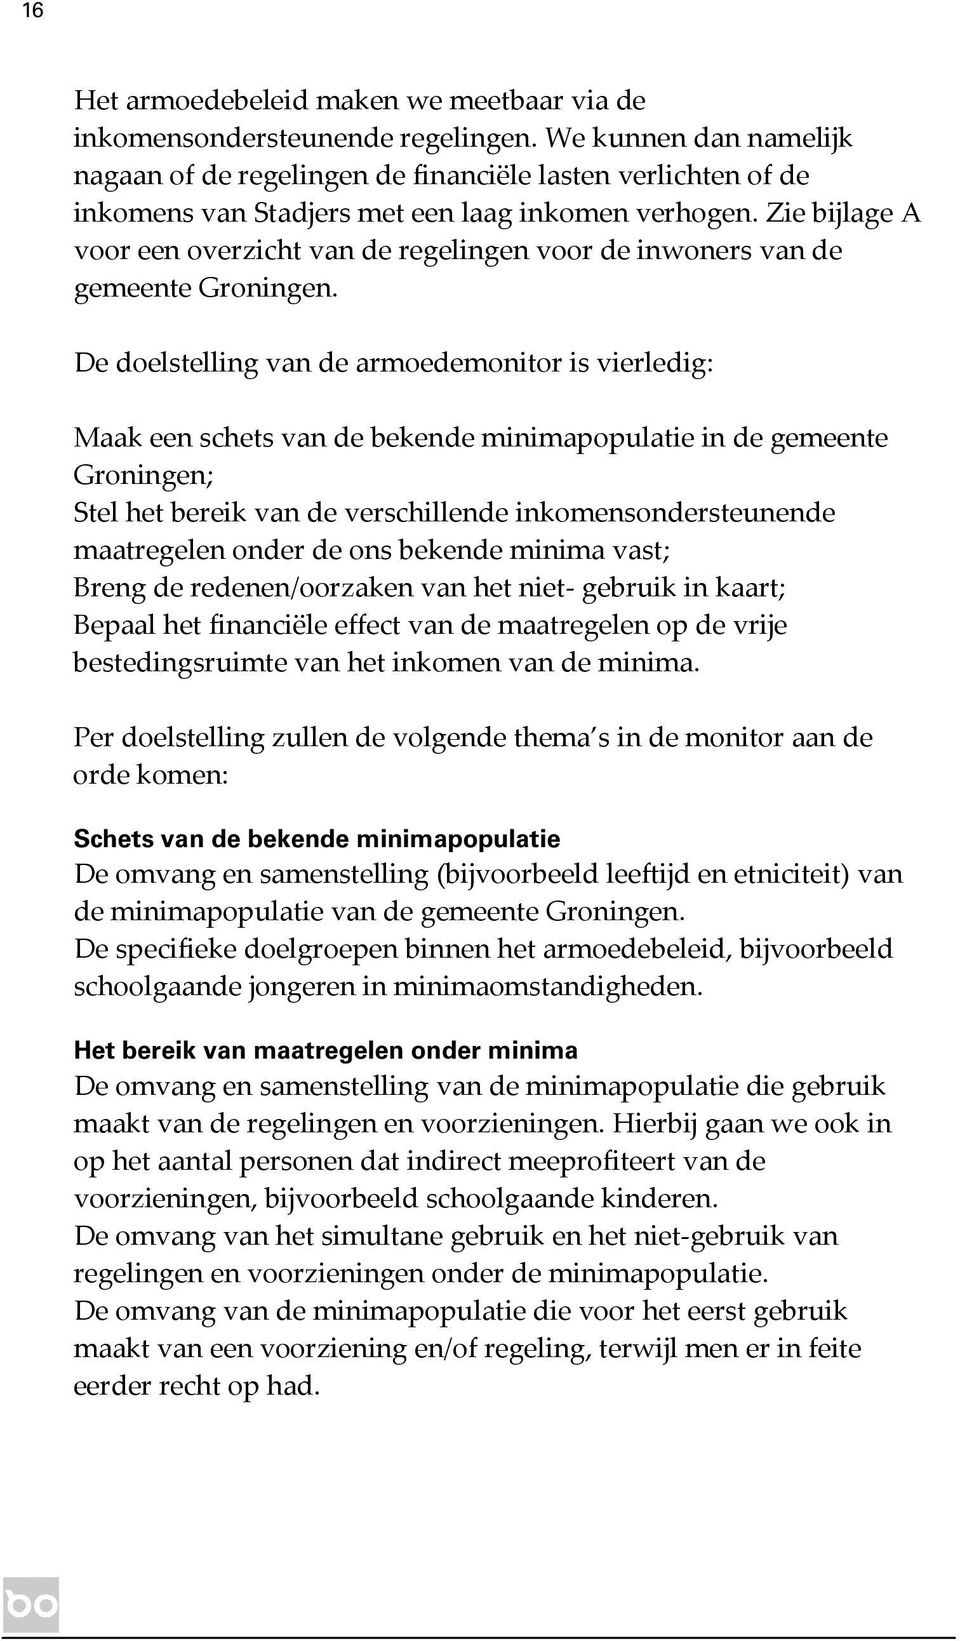 Zie bijlage A voor een overzicht van de regelingen voor de inwoners van de gemeente Groningen.